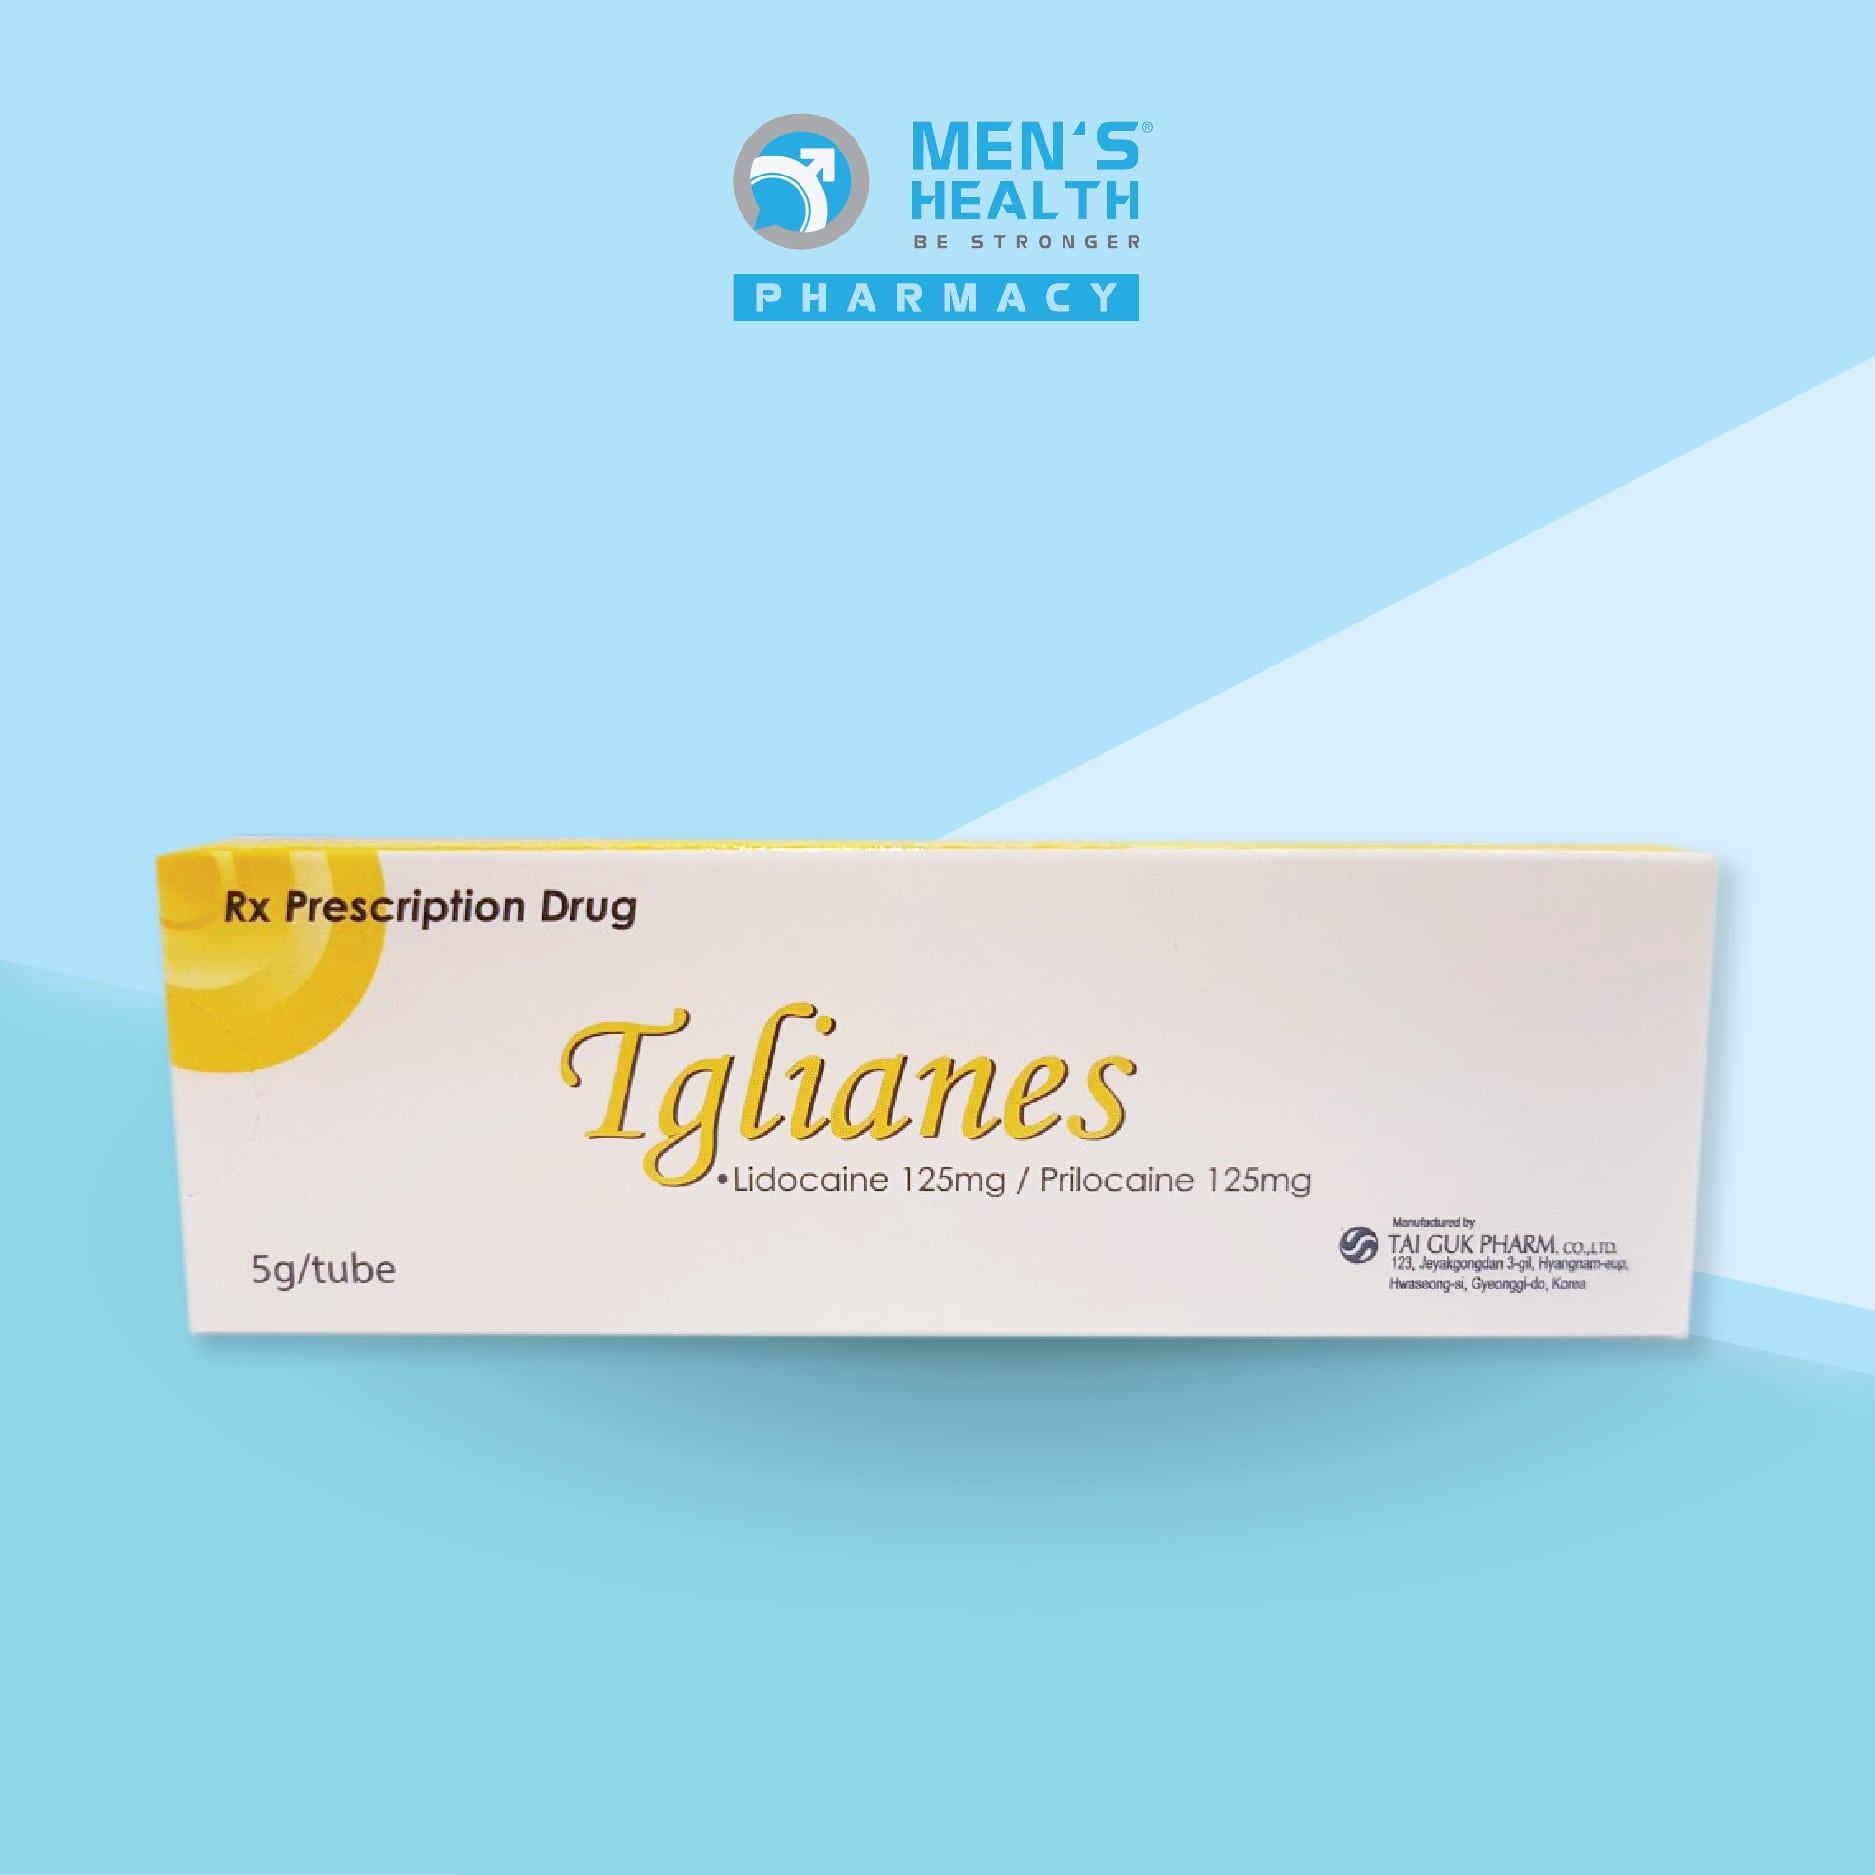 Thuốc Tglianes – Thuốc điều trị xuất tinh sớm